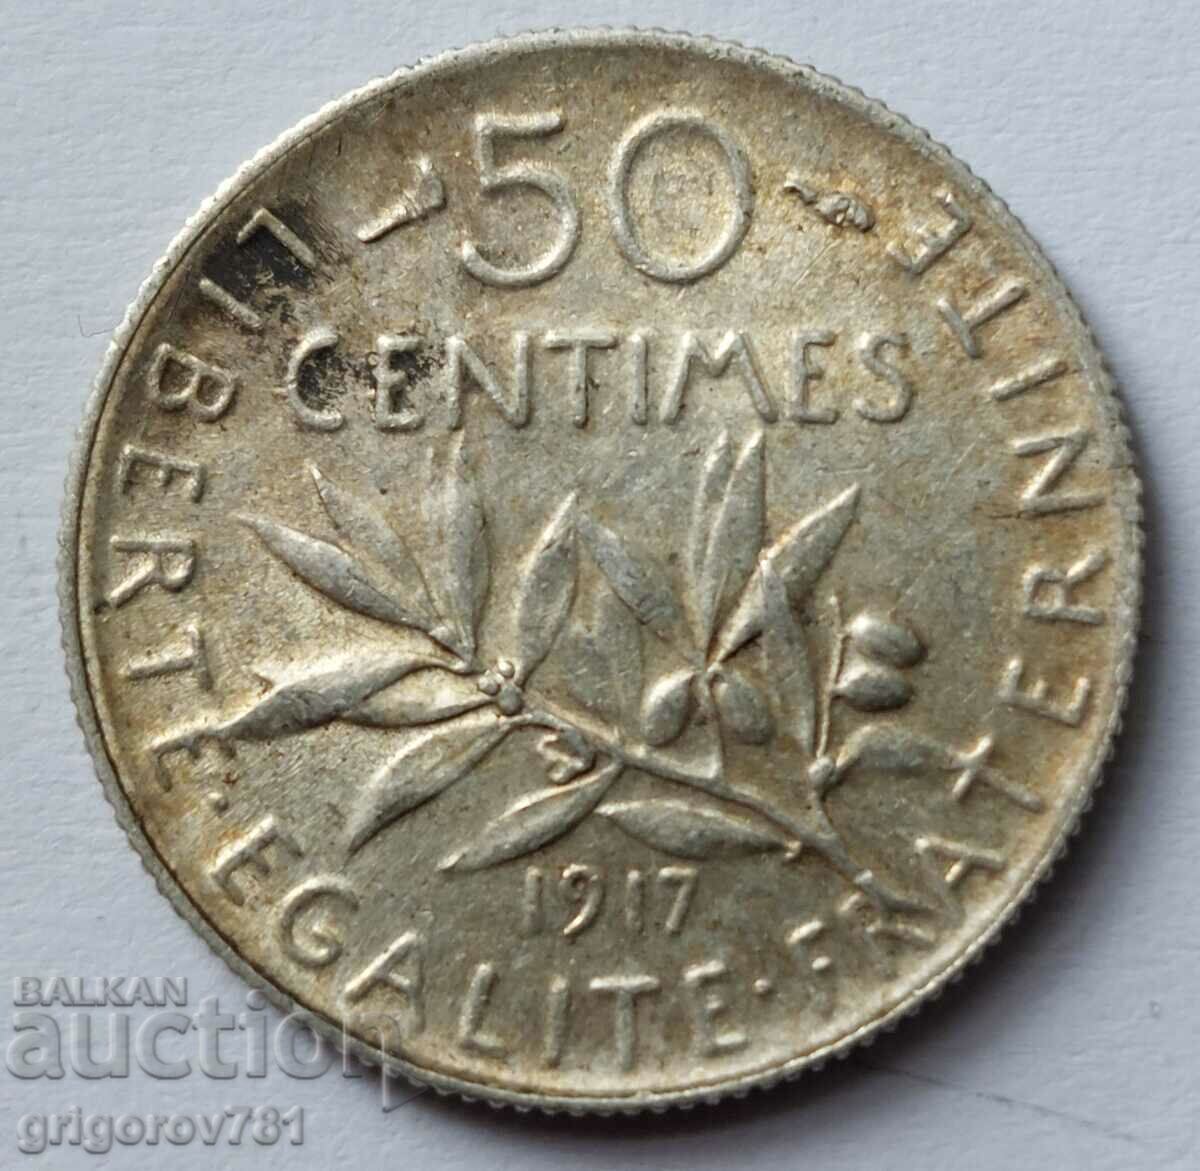 Ασημένιο 50 εκατοστά Γαλλία 1917 - ασημένιο νόμισμα №17